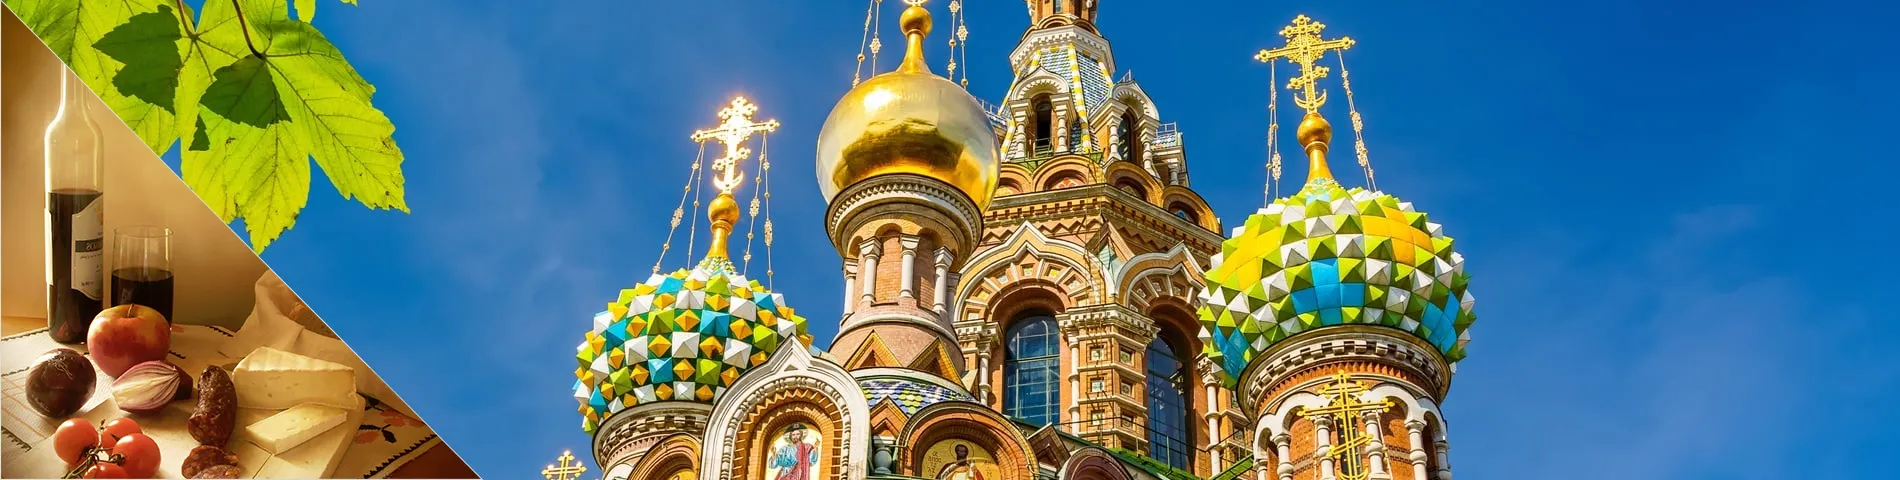 Санкт-Петербург - Русский и культура